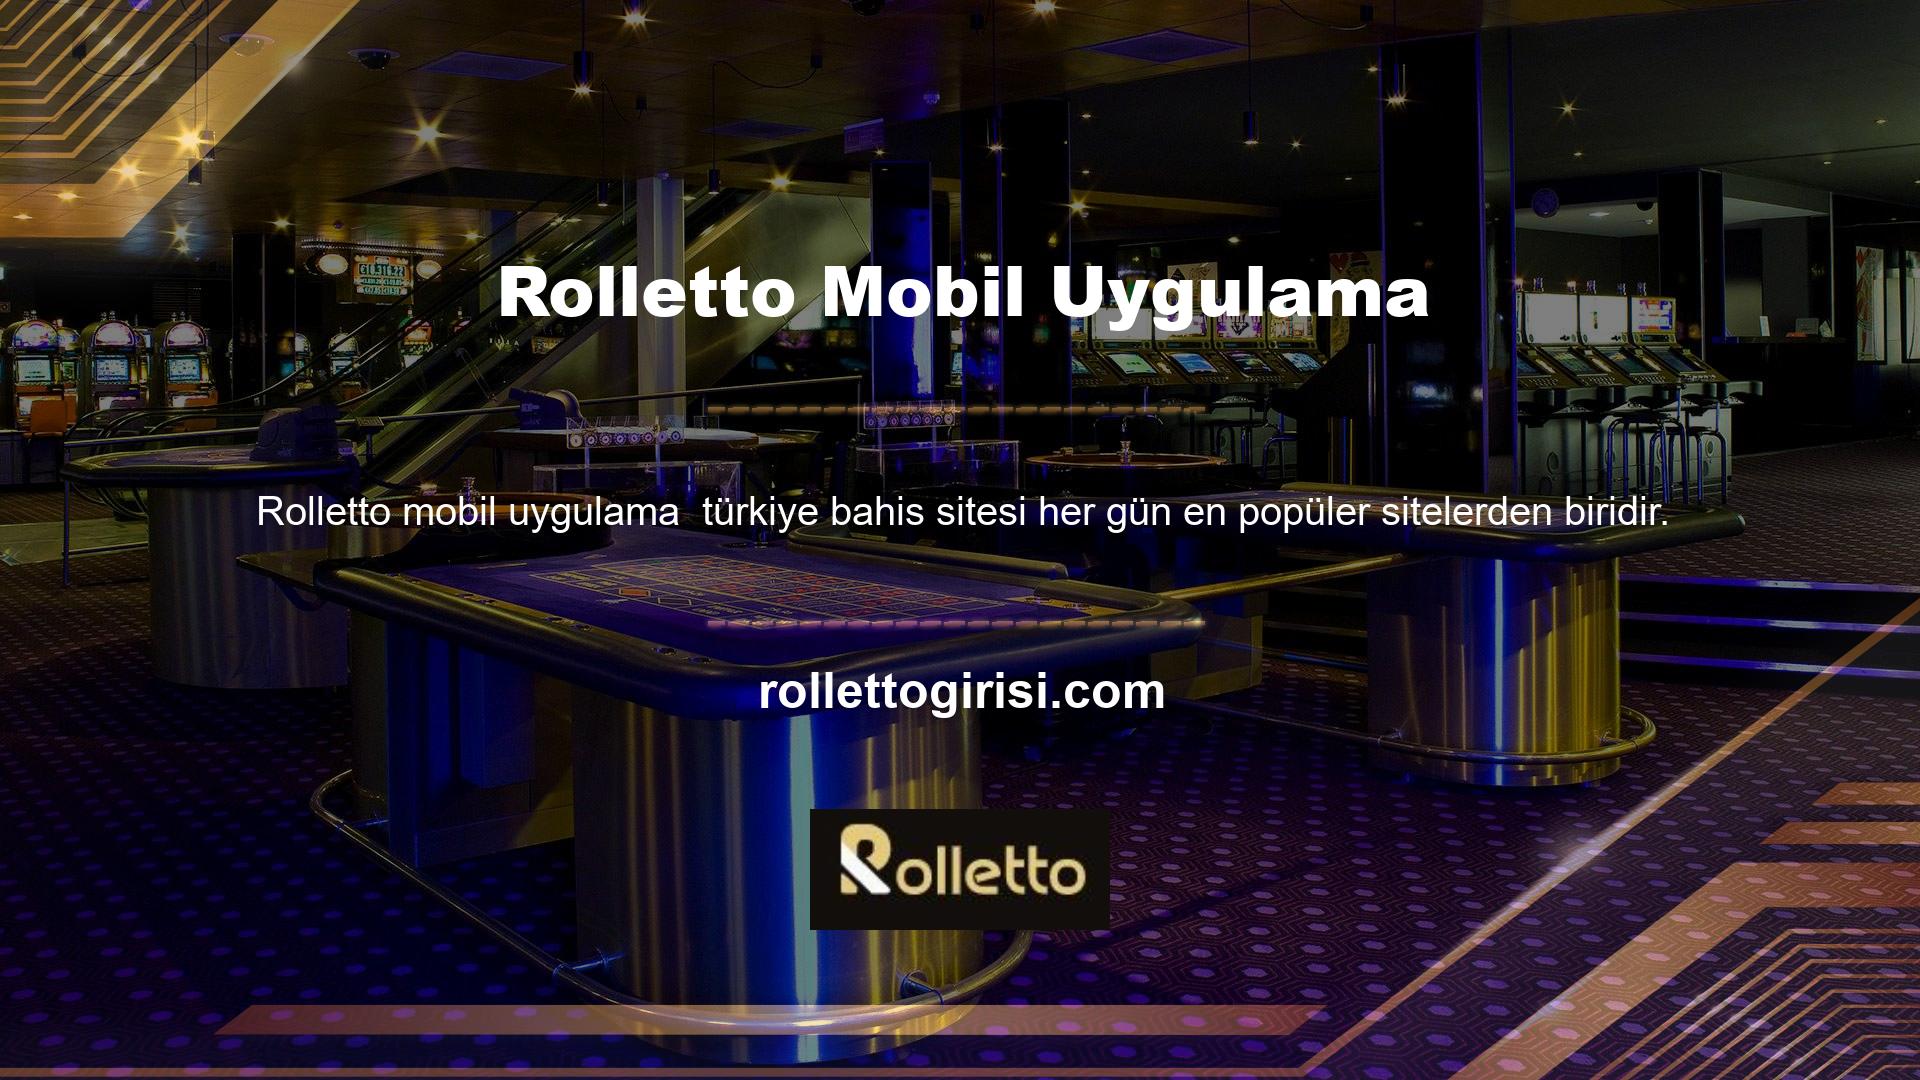 Çevrimiçi bahis platformları düşünüldüğünde ortaya çıkan ilk düşüncelerden biri Rolletto Oyun Sitesidir